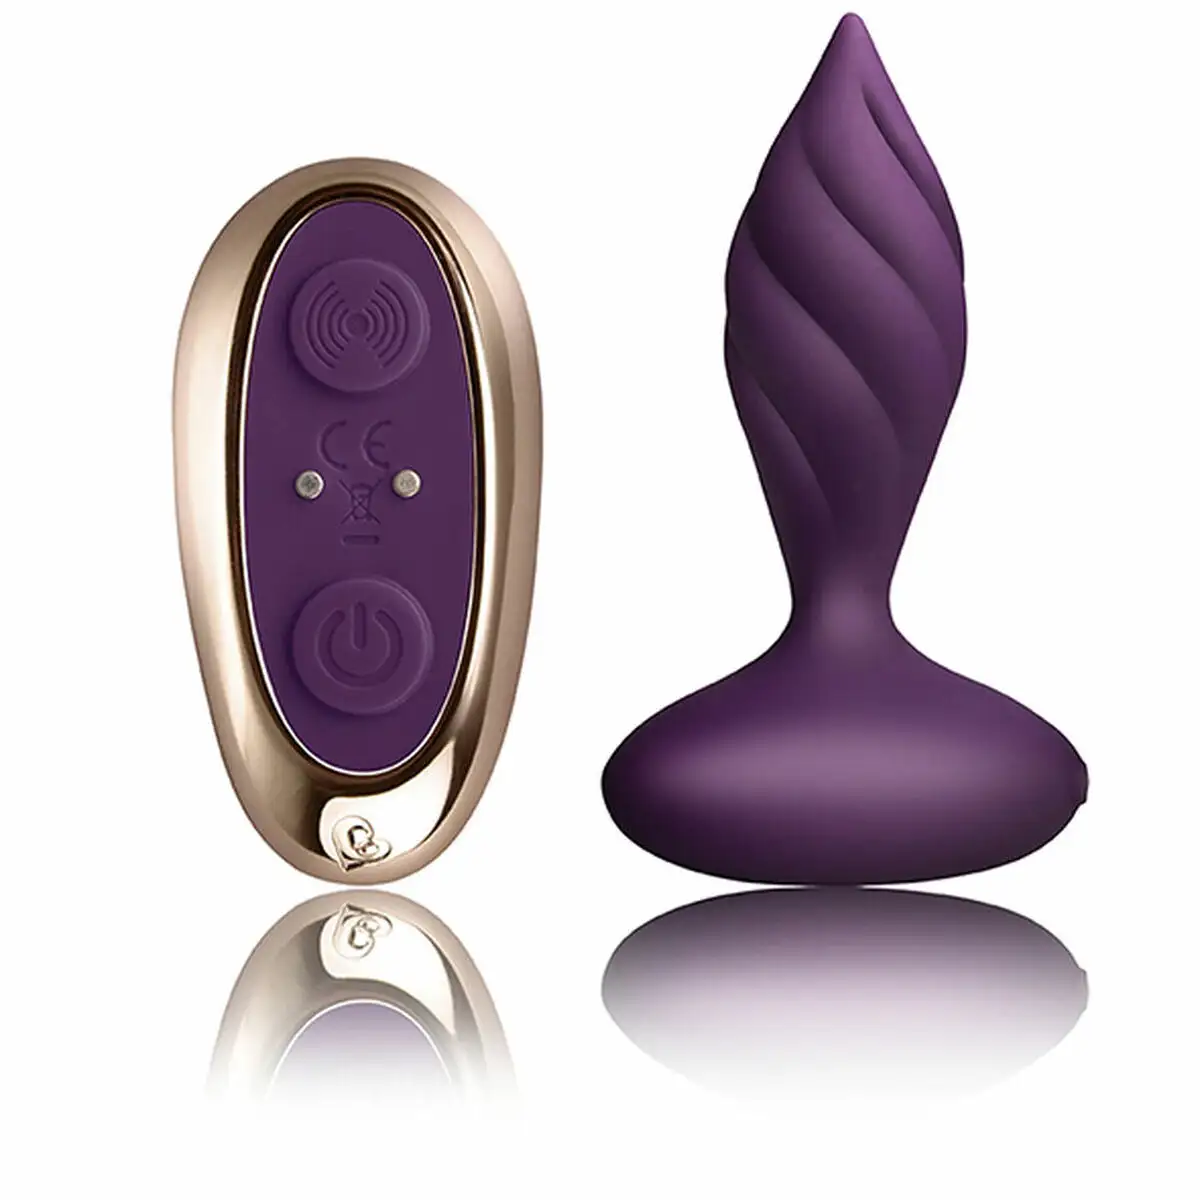 Plug vibrant anal rocks off petite sensations desire purple 10 3 cm _1369. Entrez dans DIAYTAR SENEGAL - Où Chaque Détail Compte. Explorez notre boutique en ligne pour trouver des produits de haute qualité, soigneusement choisis pour répondre à vos besoins et vos désirs.